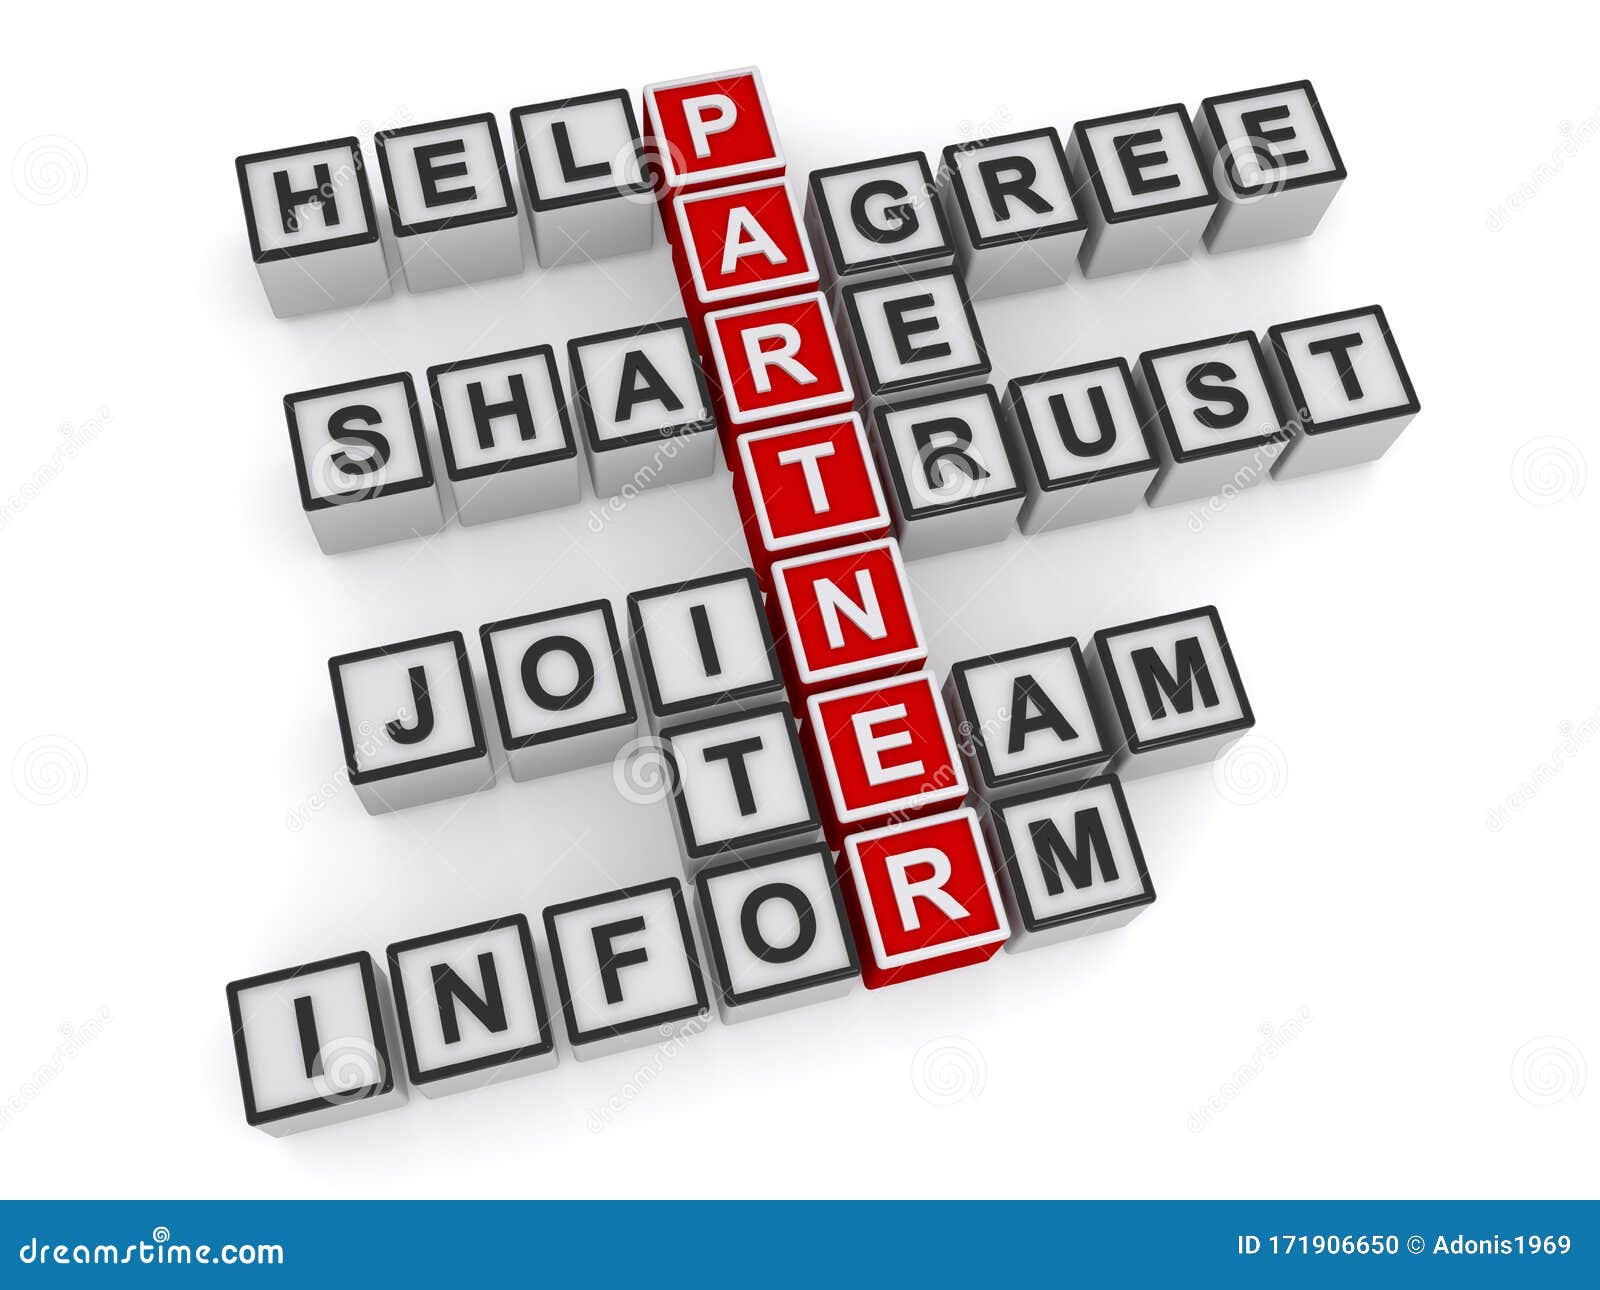 partner help agree share trust join team inform on white